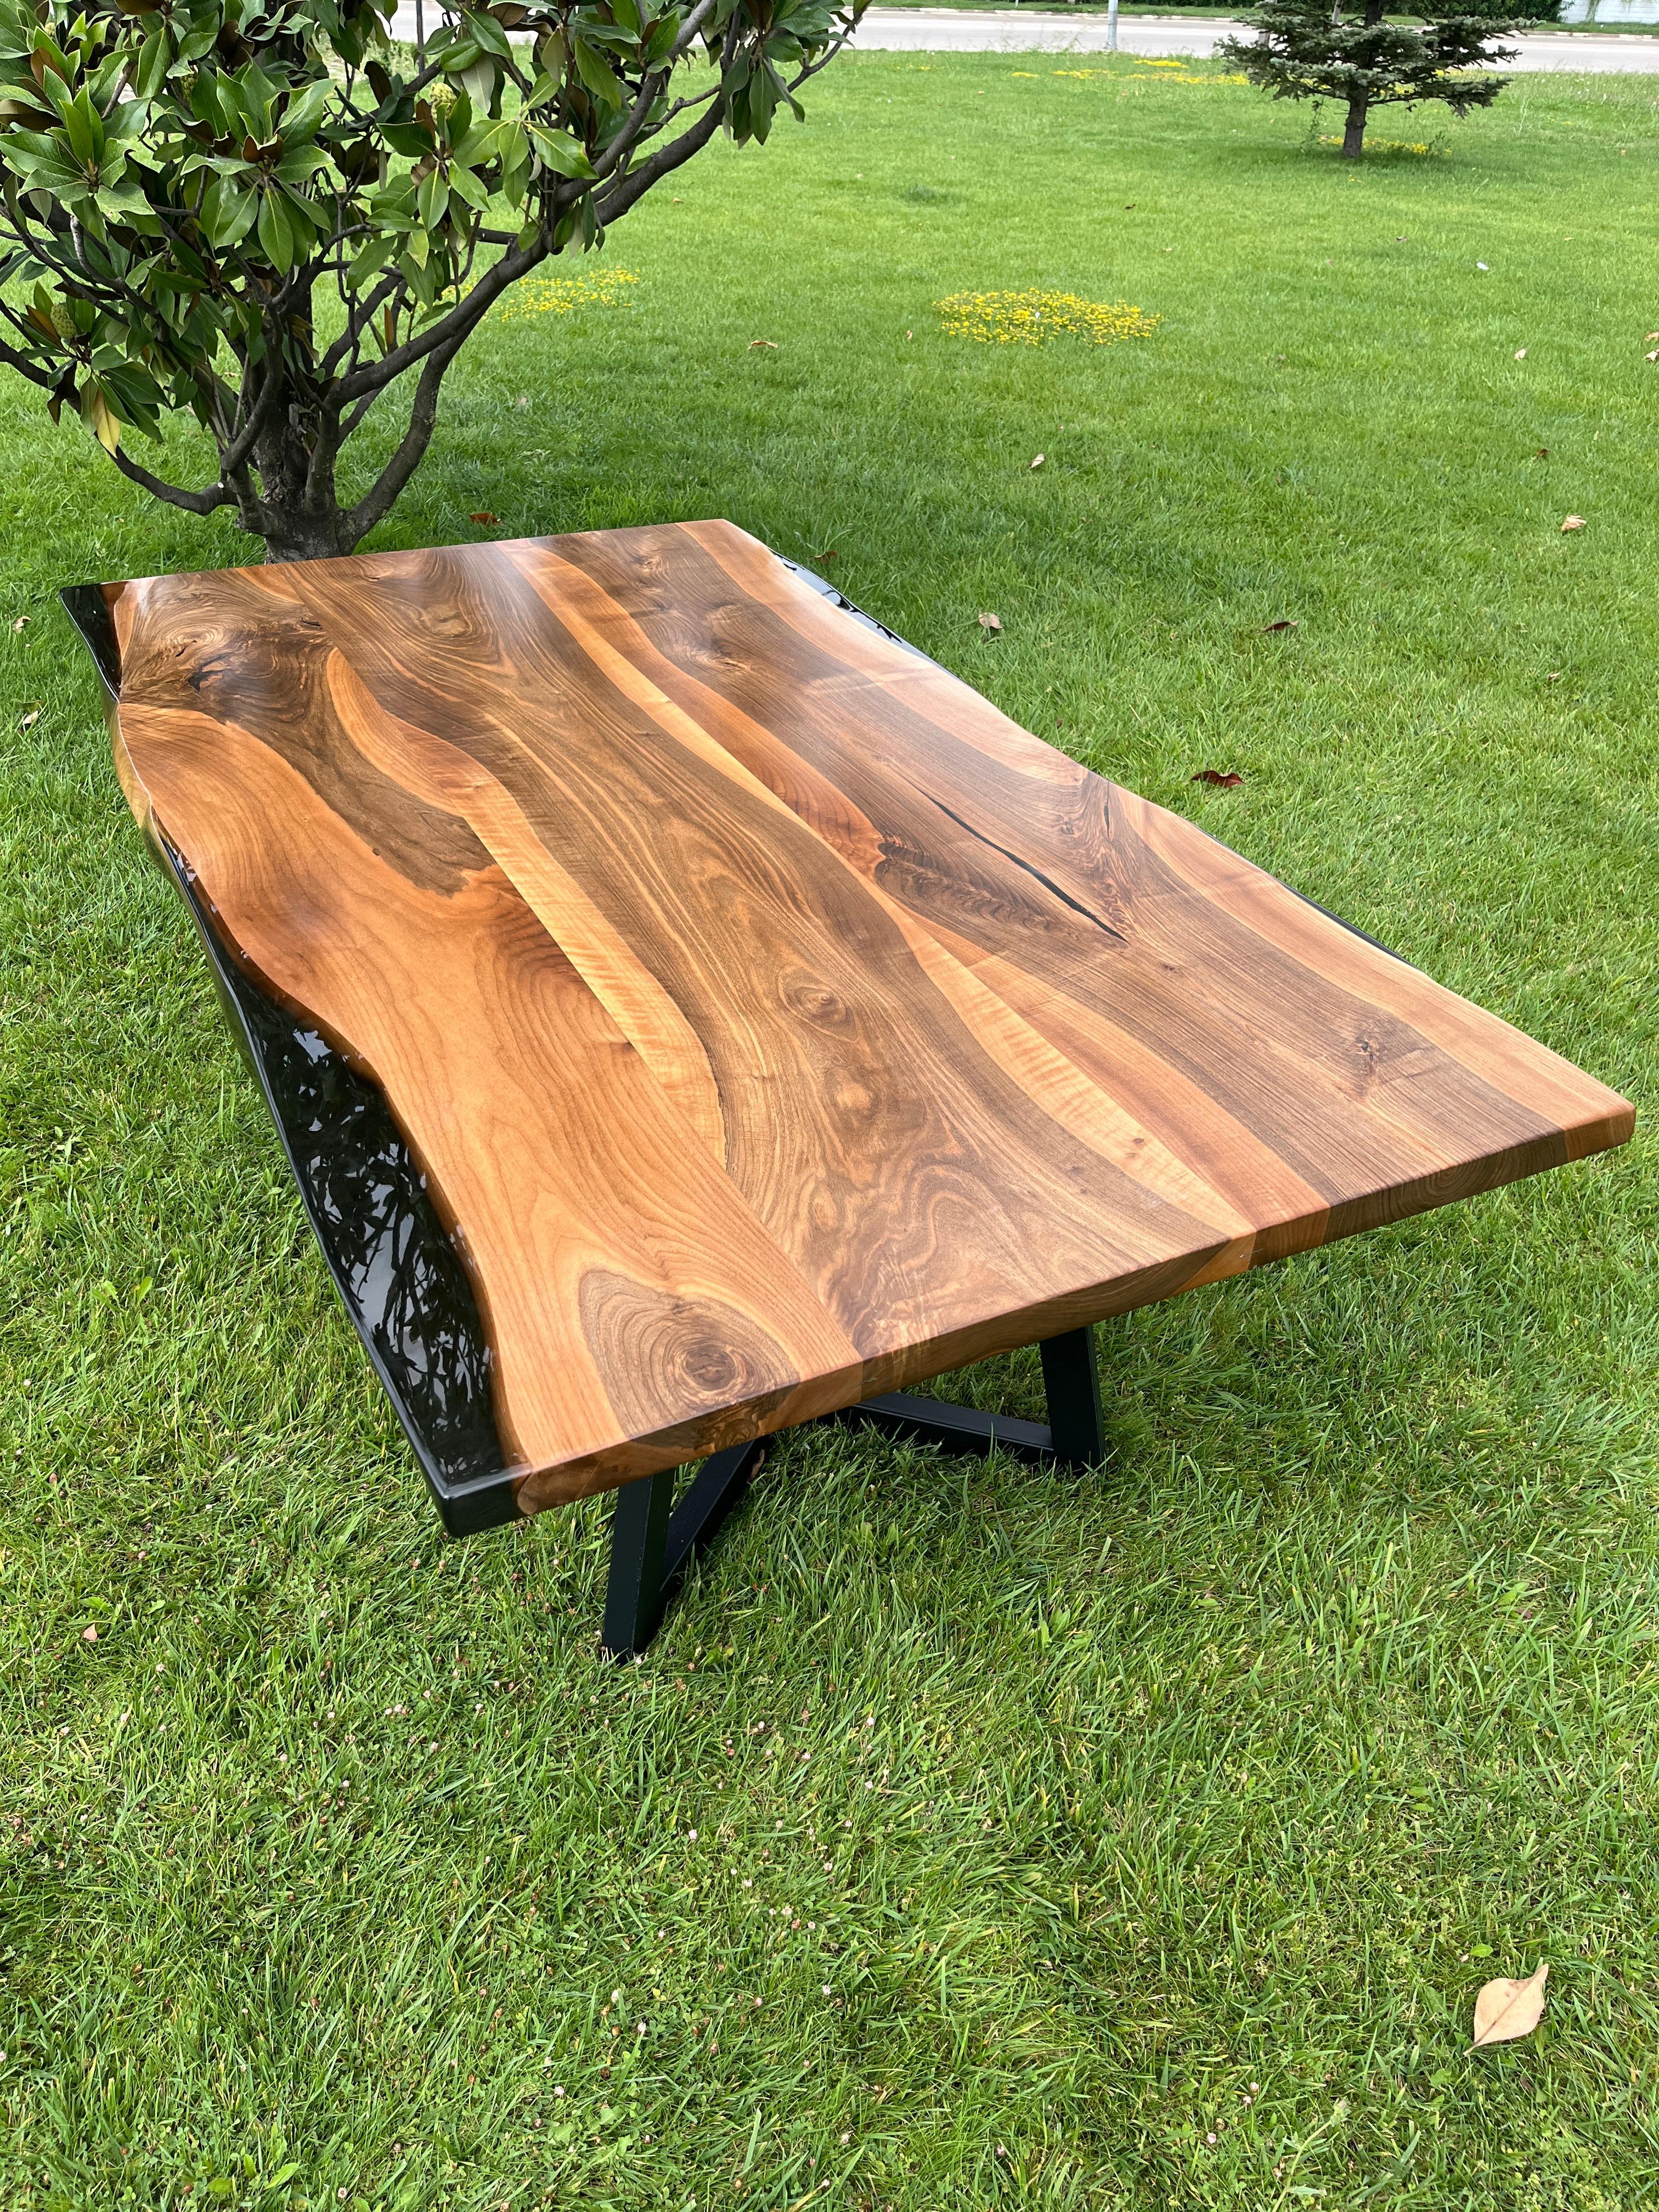 LEBENDIGE KANTE ESSTISCH AUS NUSSBAUM NACH MASS

Dieser Tisch ist aus natürlichen Walnussplatten gefertigt. 

Einige Nussbaumplatten sind von natürlicher Schönheit, da ihre eine Seite eine große Rundung aufweist. Dies ist einer von ihnen! 

Wir